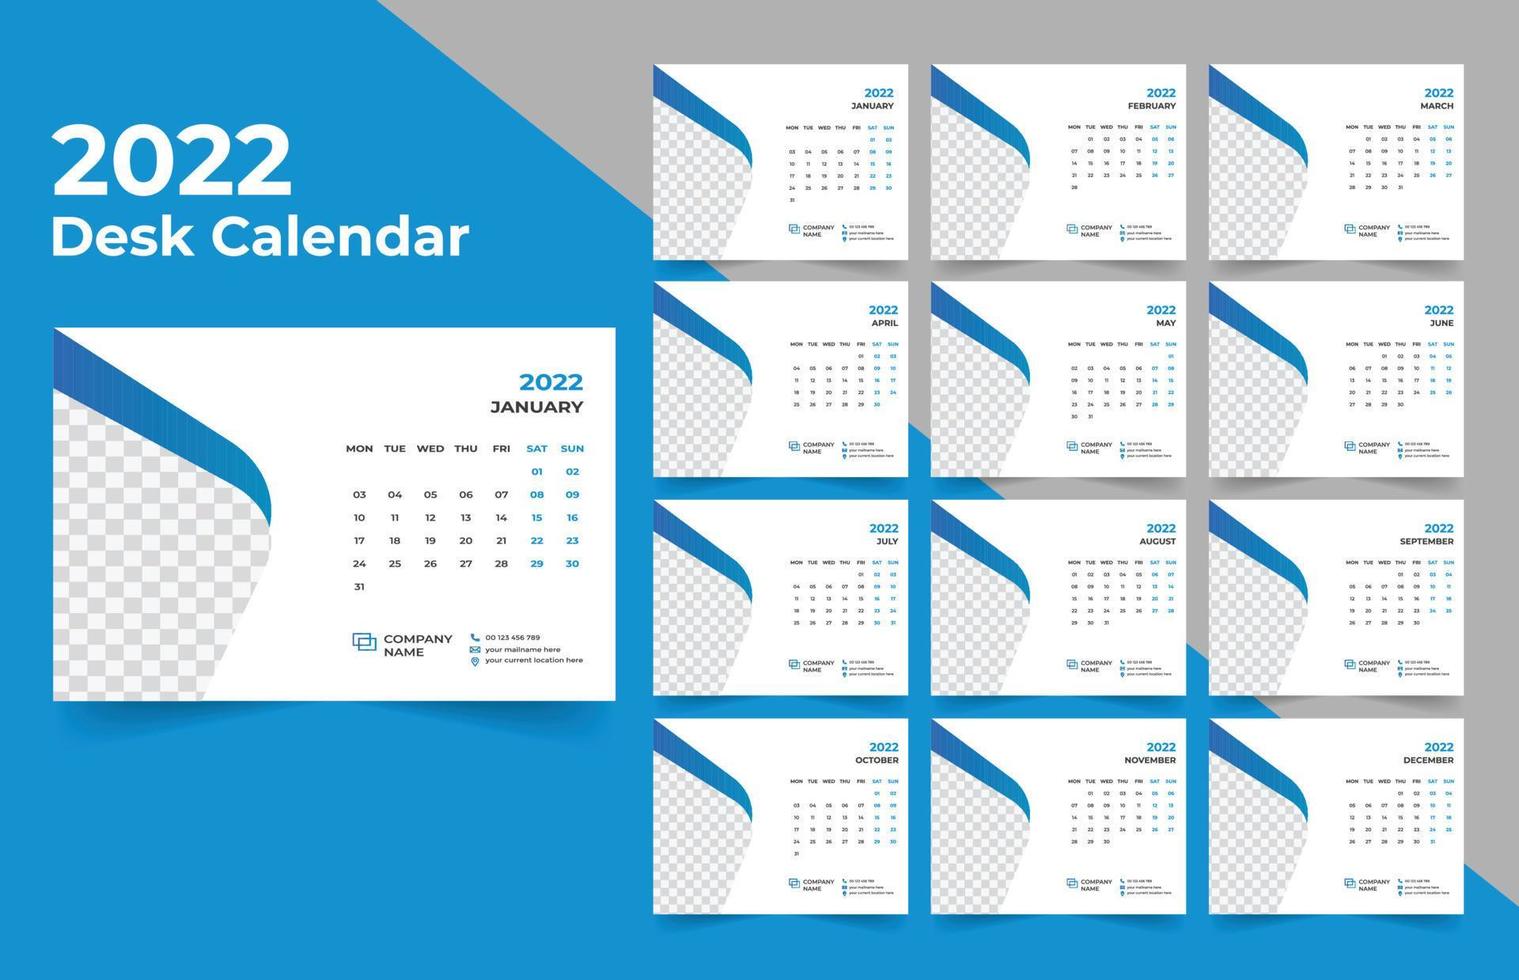 Calendario da tavolo 2022. La settimana inizia il lunedì. modello per il calendario annuale 2022. vettore